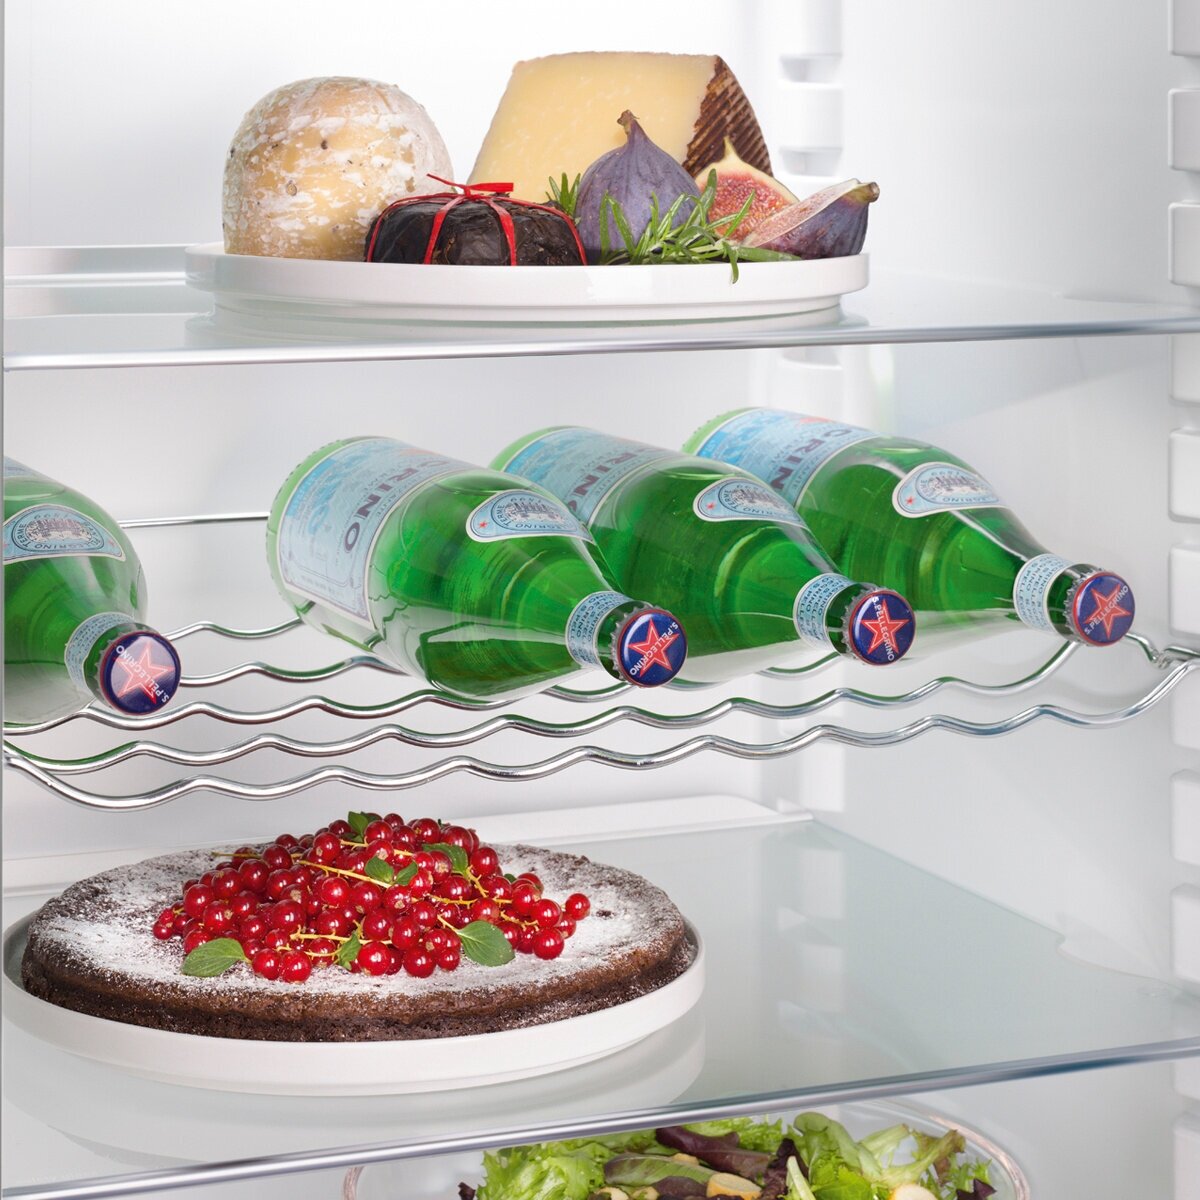 Холодильник Liebherr - фото №10